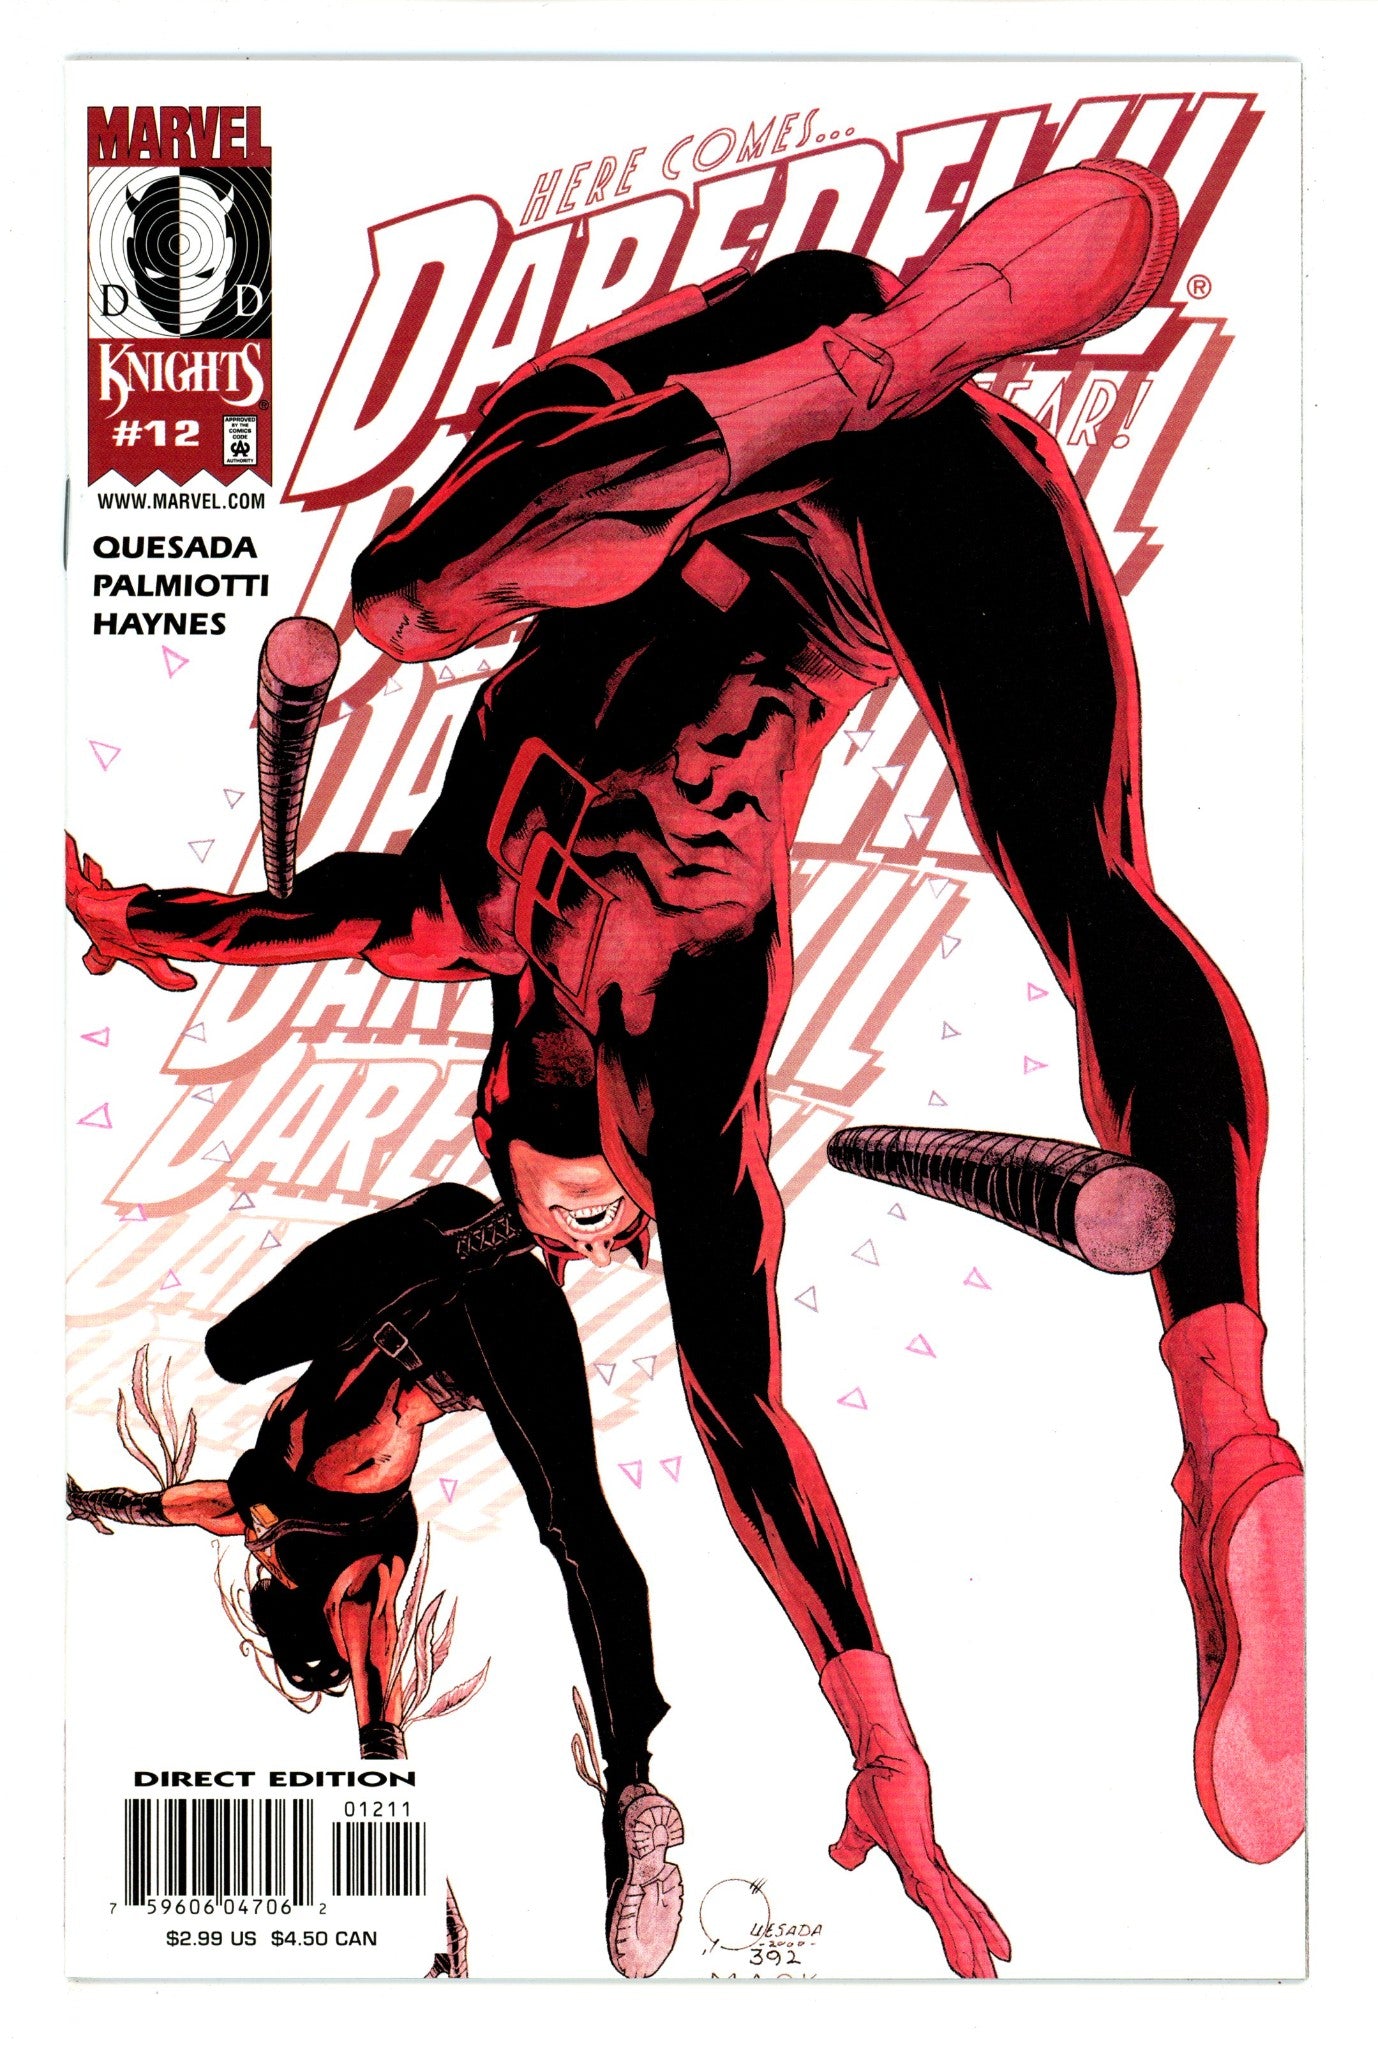 Daredevil Vol 2 12 VF/NM (9.0) (2000) 